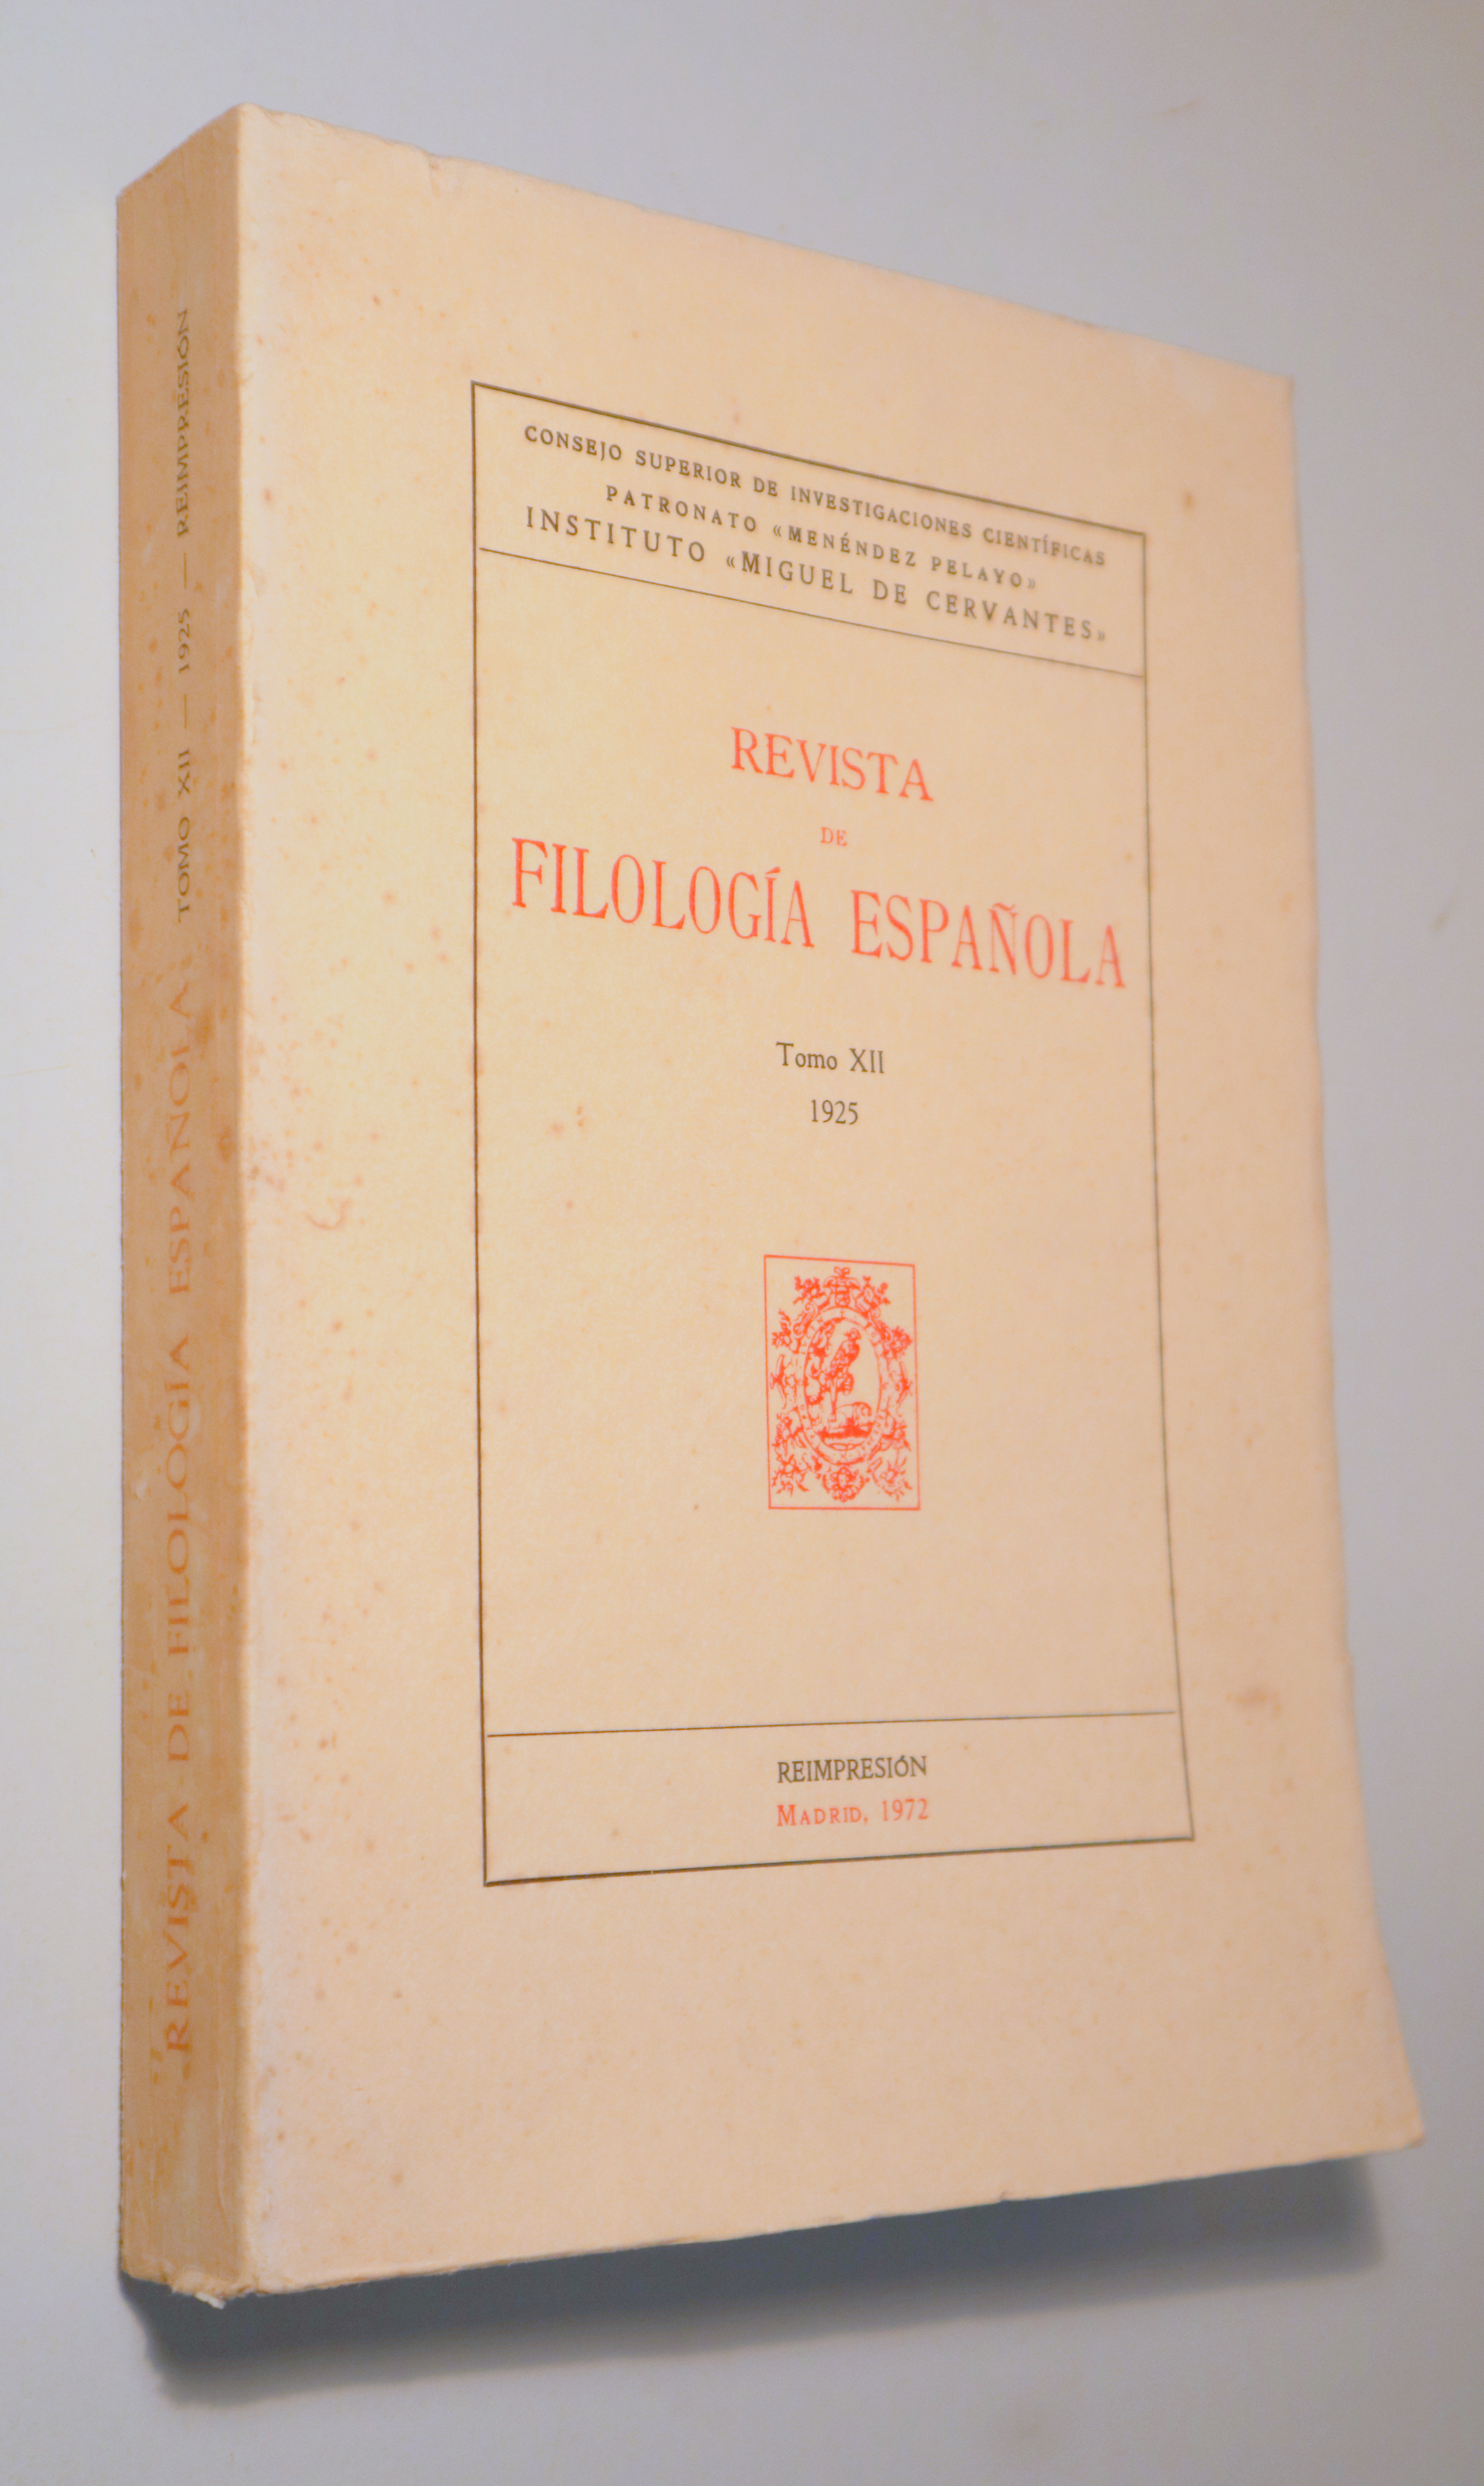 REVISTA DE FILOLOGÍA ESPAÑOLA. Tomo XII 1925 - Madrid 1972 - Reimpresión